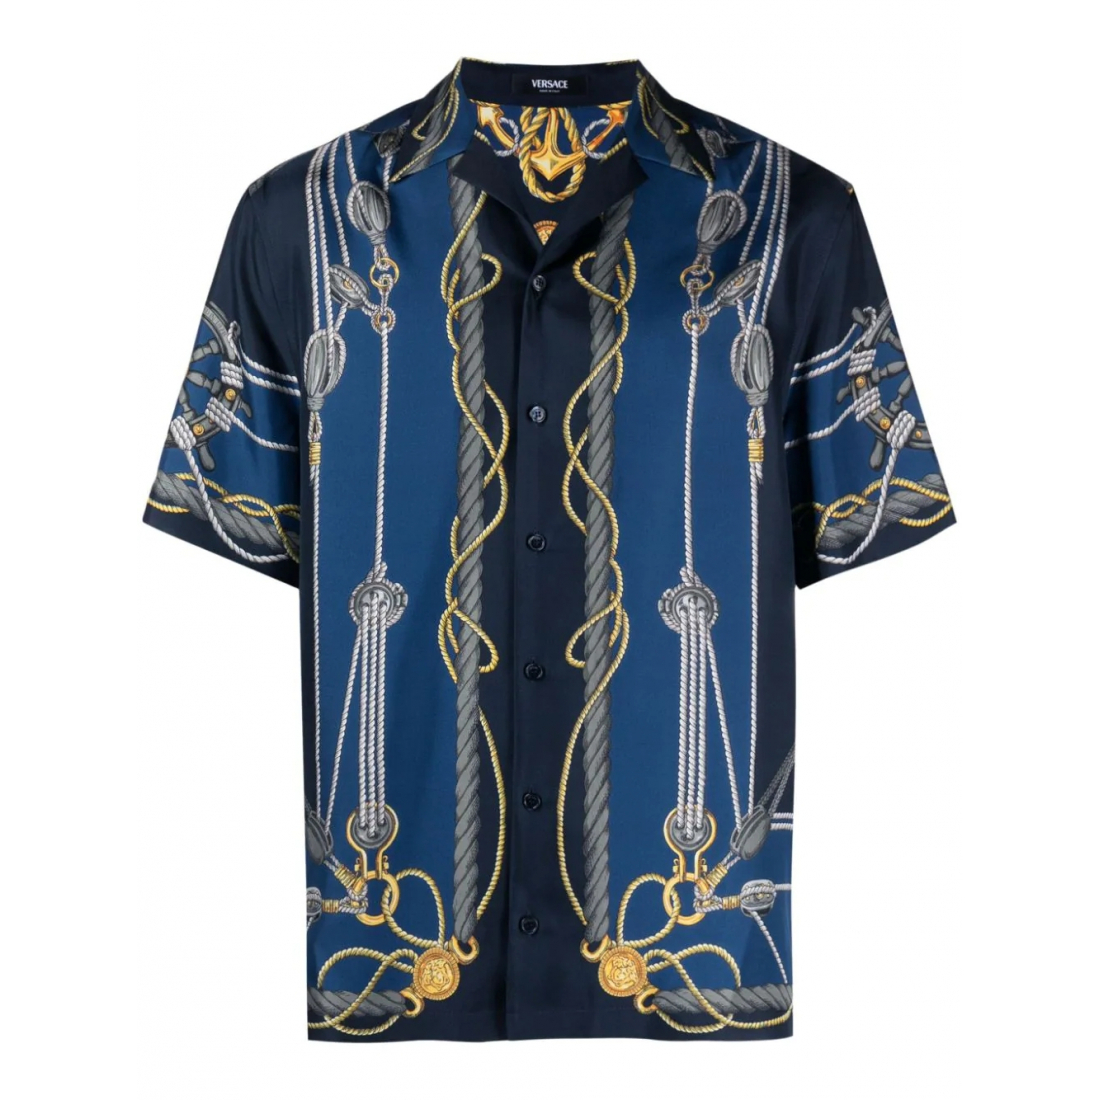 Men's 'Nautical Graphic' Short sleeve shirt